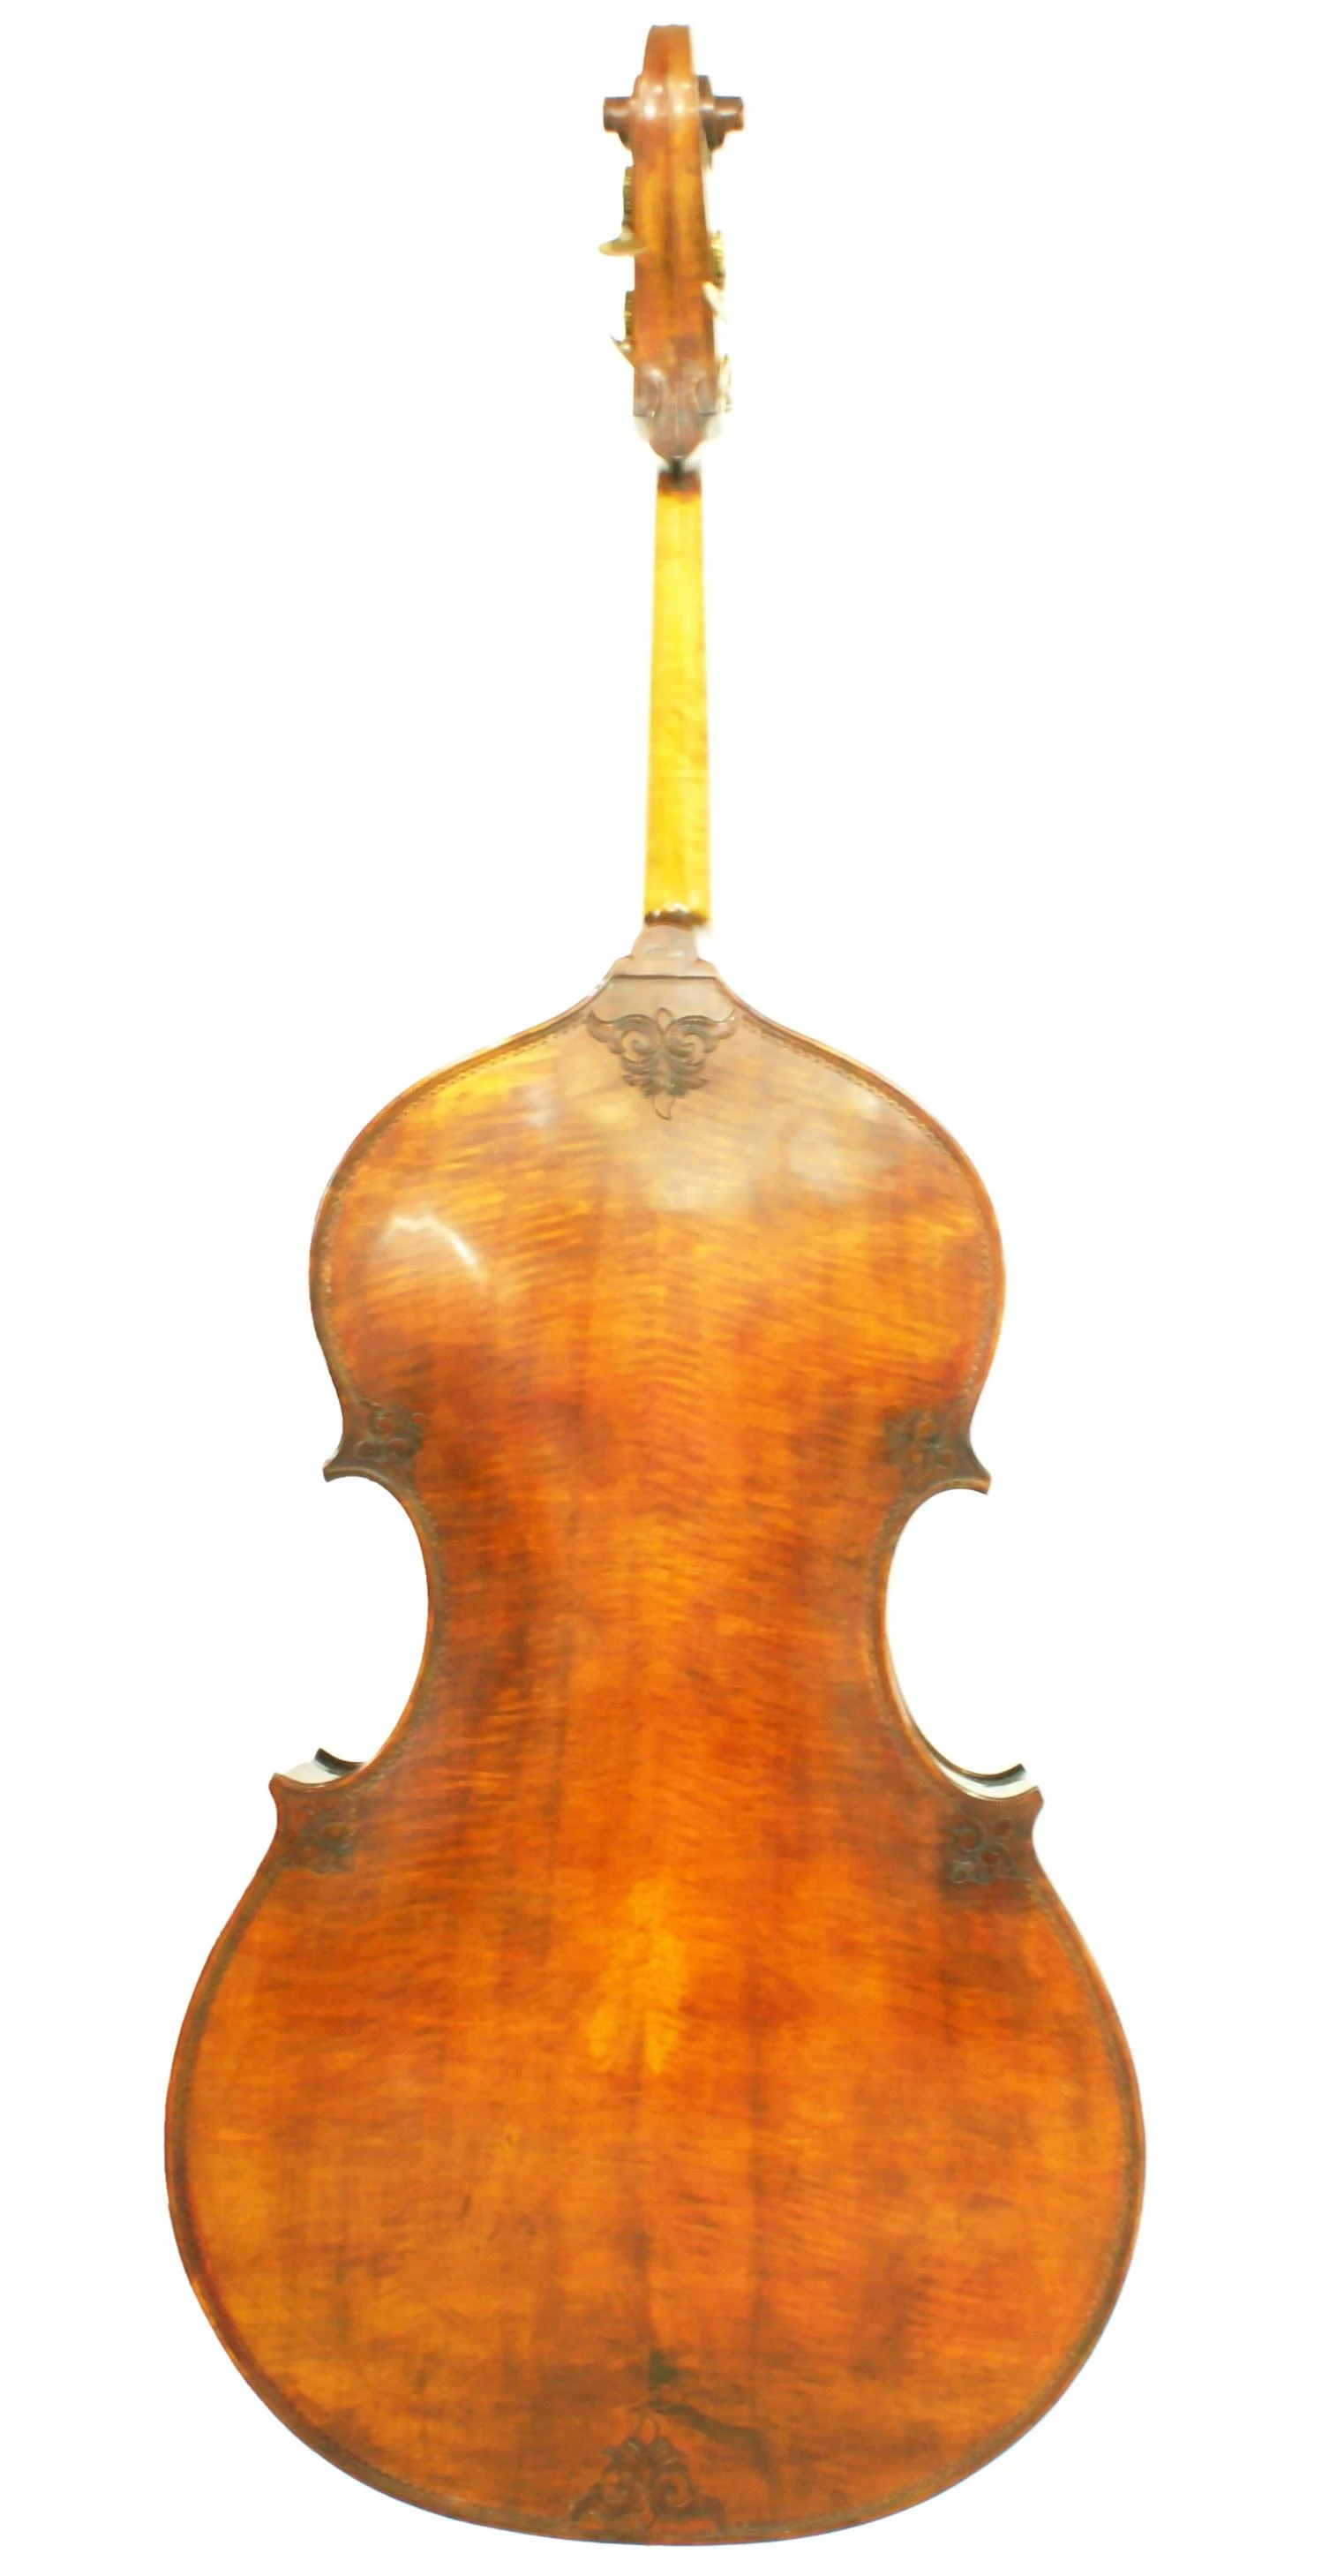 安默麗低音提琴‧Model of Gaetano rossi contrabbasso 1847 Doublebass